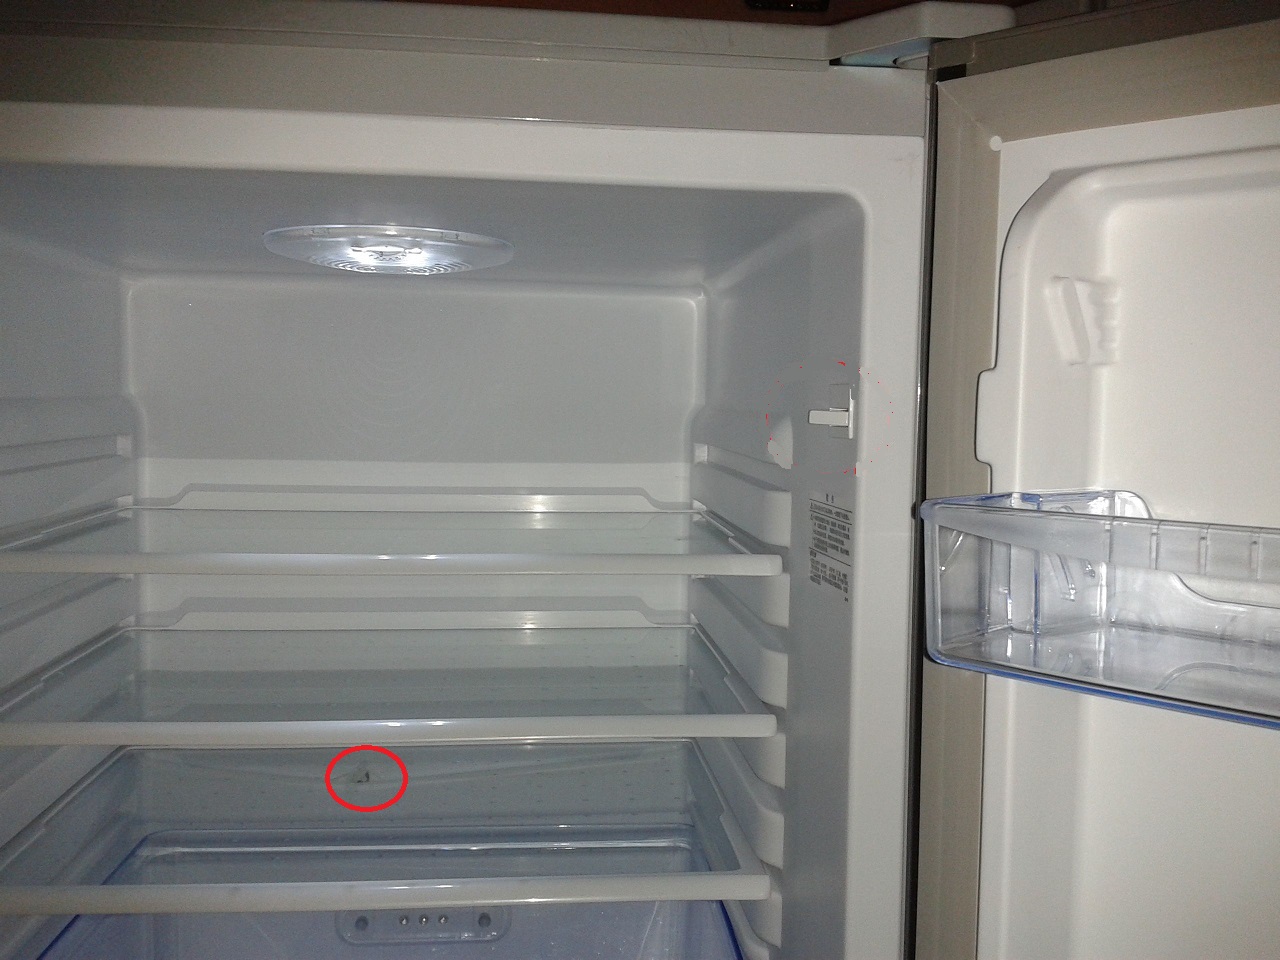 冰箱冷藏室的眼堵了怎样疏通,冰箱有积水应该怎么解决